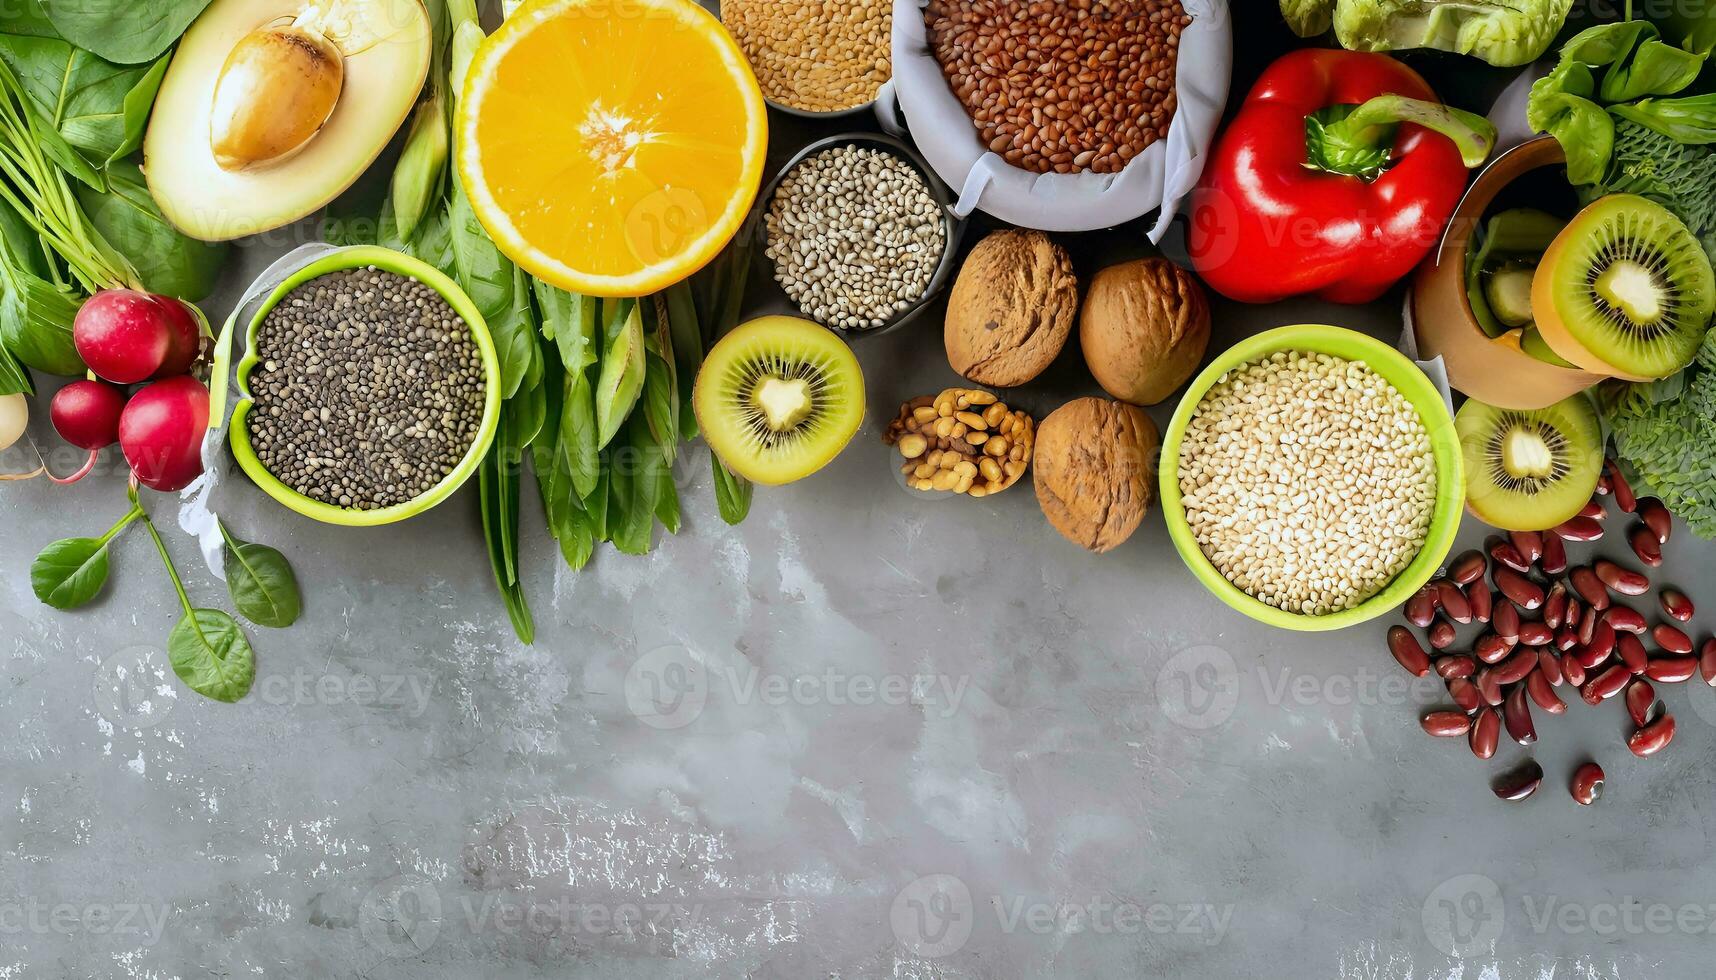 gezond voedsel schoon aan het eten selectie fruit groente zaden superfood ontbijtgranen blad groente Aan grijs beton achtergrond foto